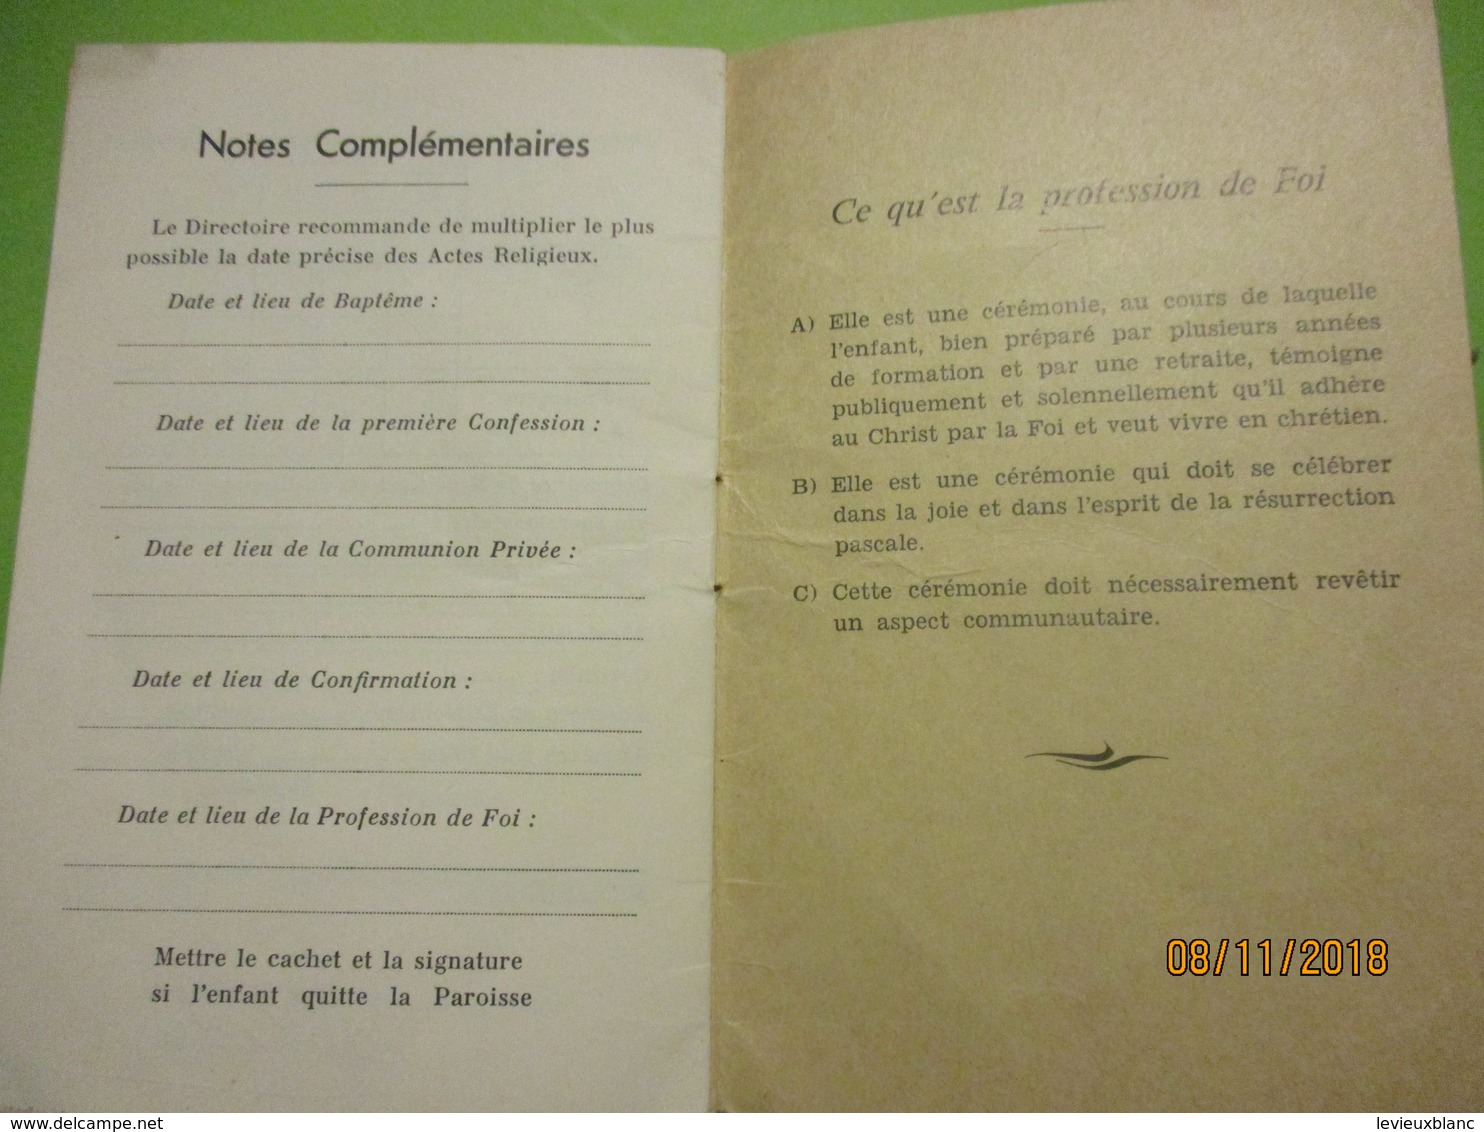 Carnet de Messe et de Cathéchisme pour un an /Paroisse Saint Nicolas/Méziéres sur Seine/RECTON/1968-69   CAN757